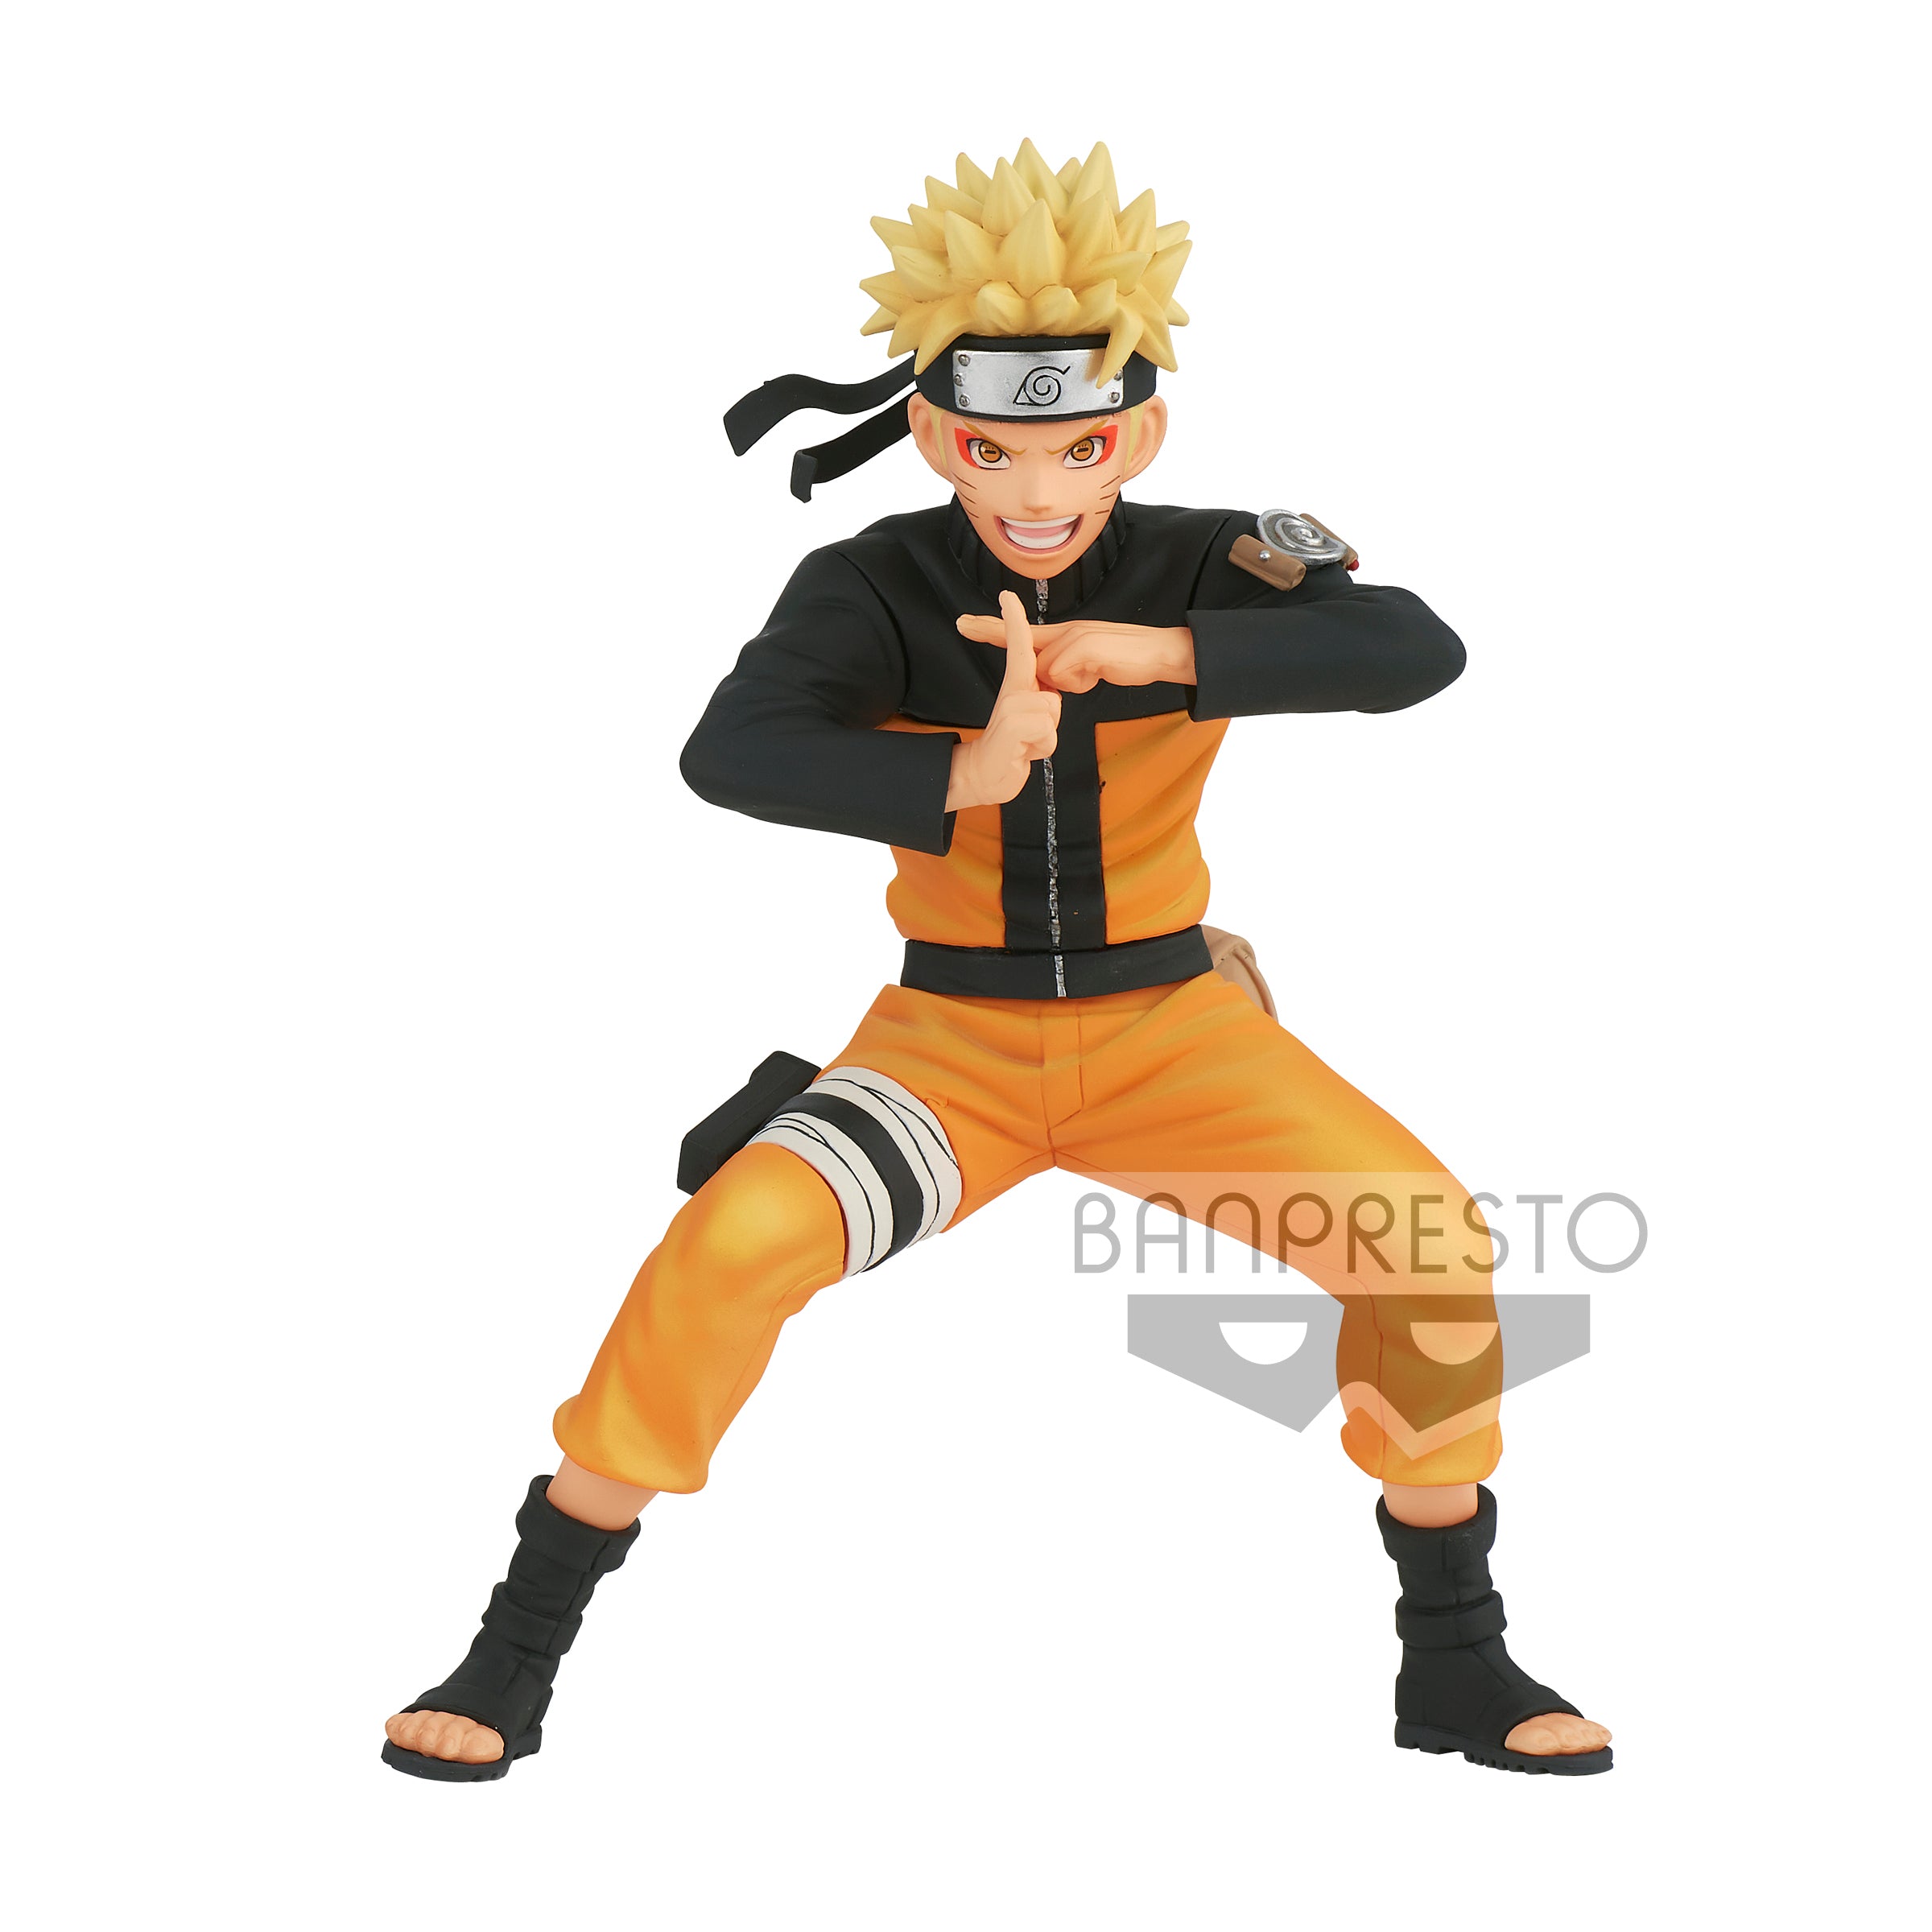 Naruto Shippuden - Naruto Uzumaki Vibration Stars Banpresto